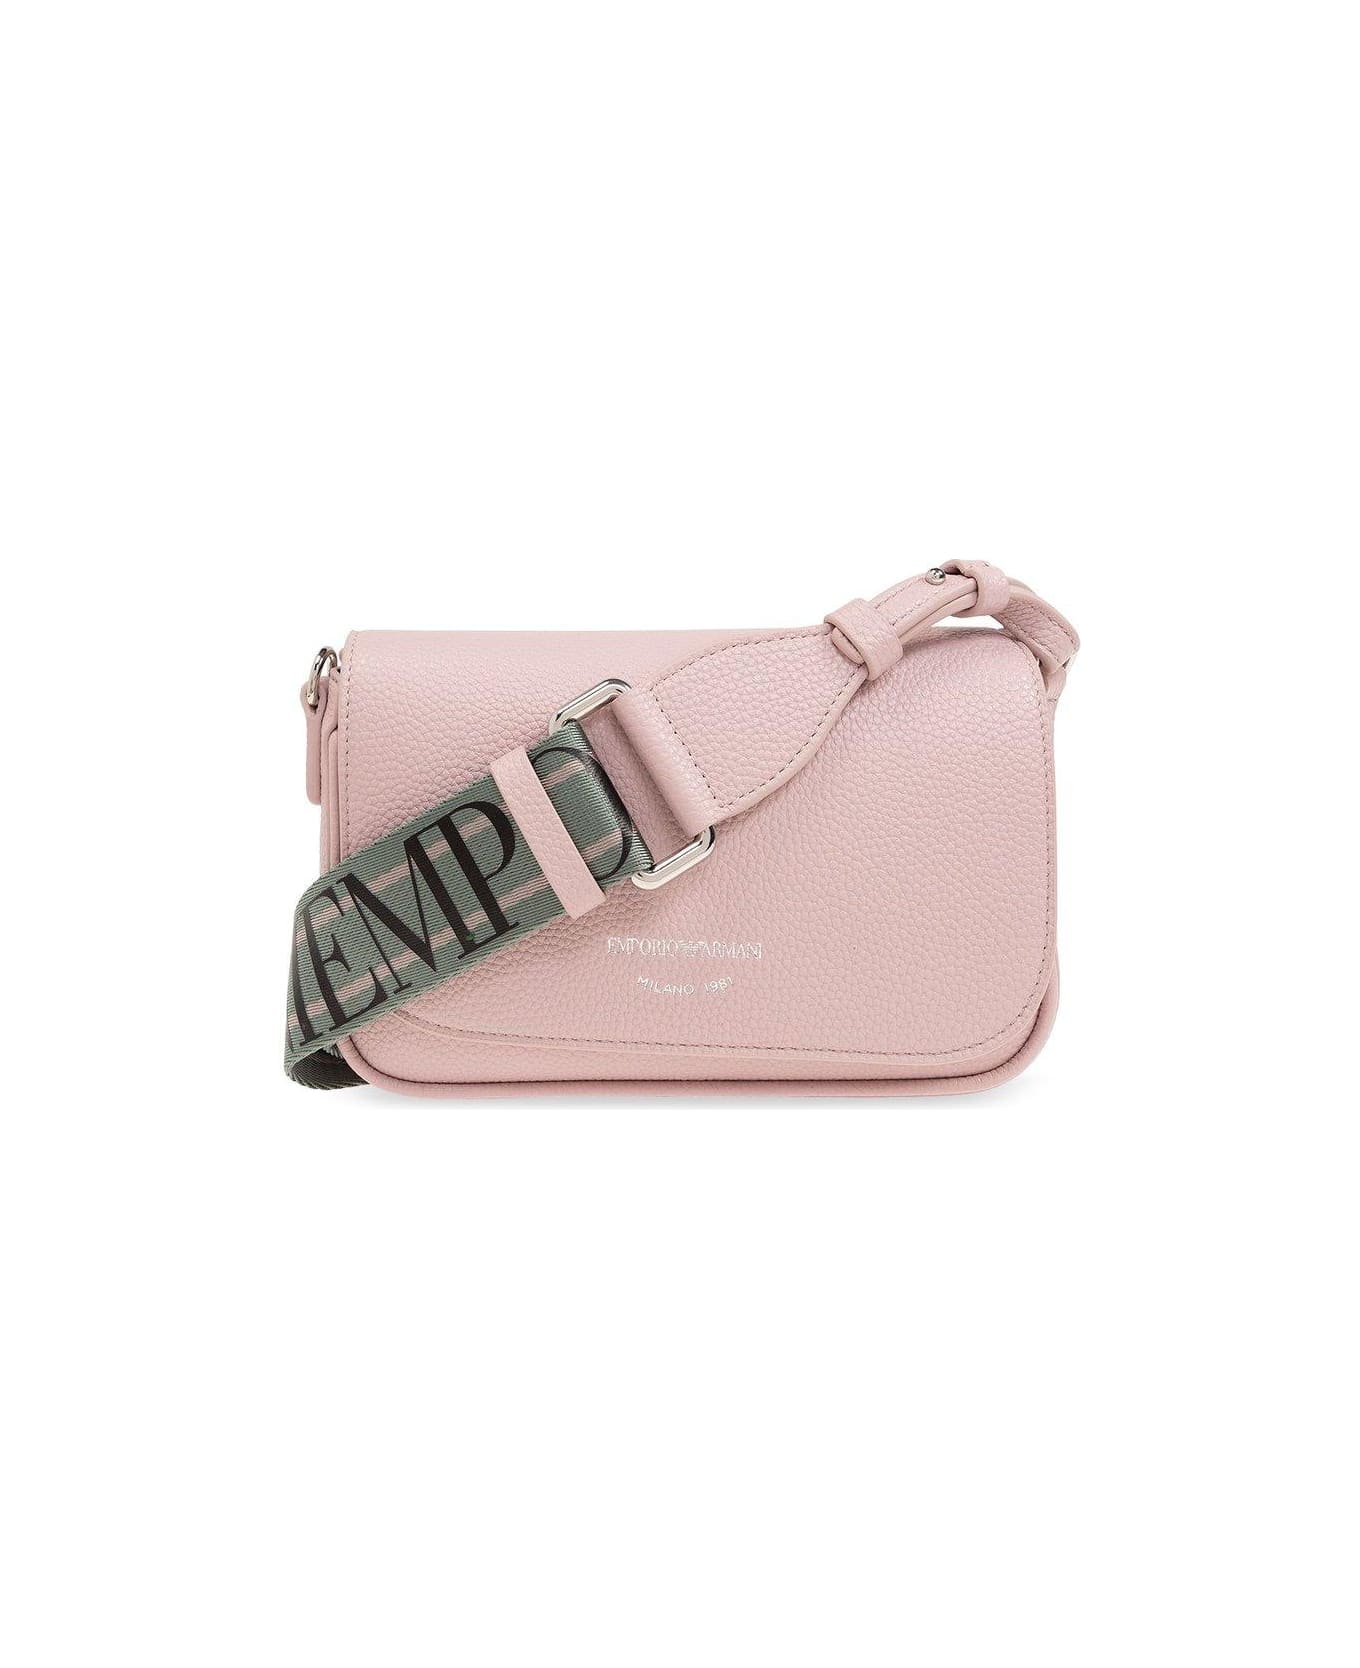 Emporio Armani Shoulder Bag With Logo - Pink